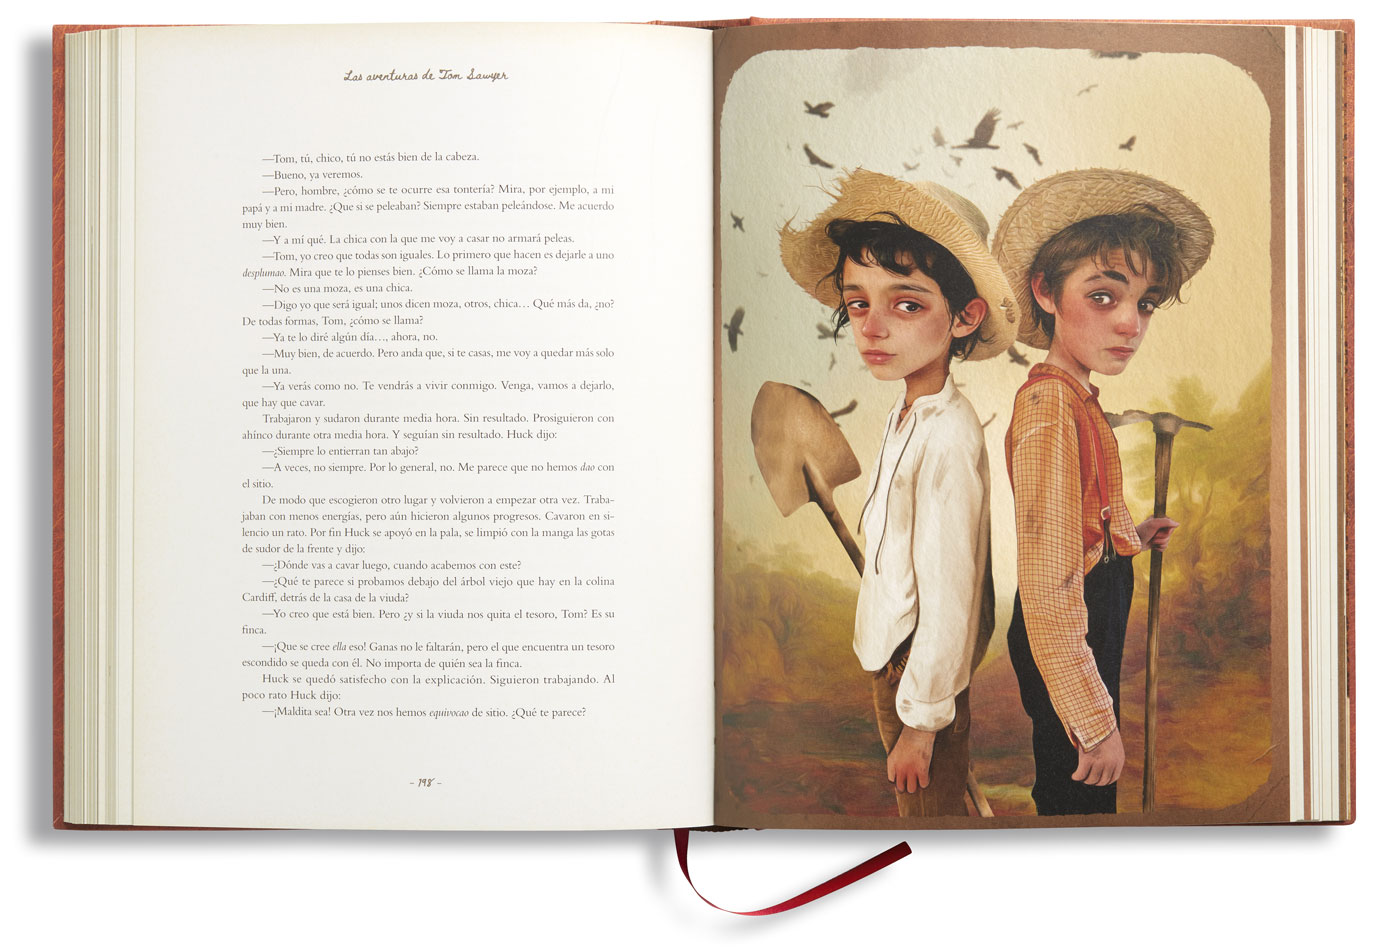 Las aventuras de Tom Sawyer, libro ilustrado.